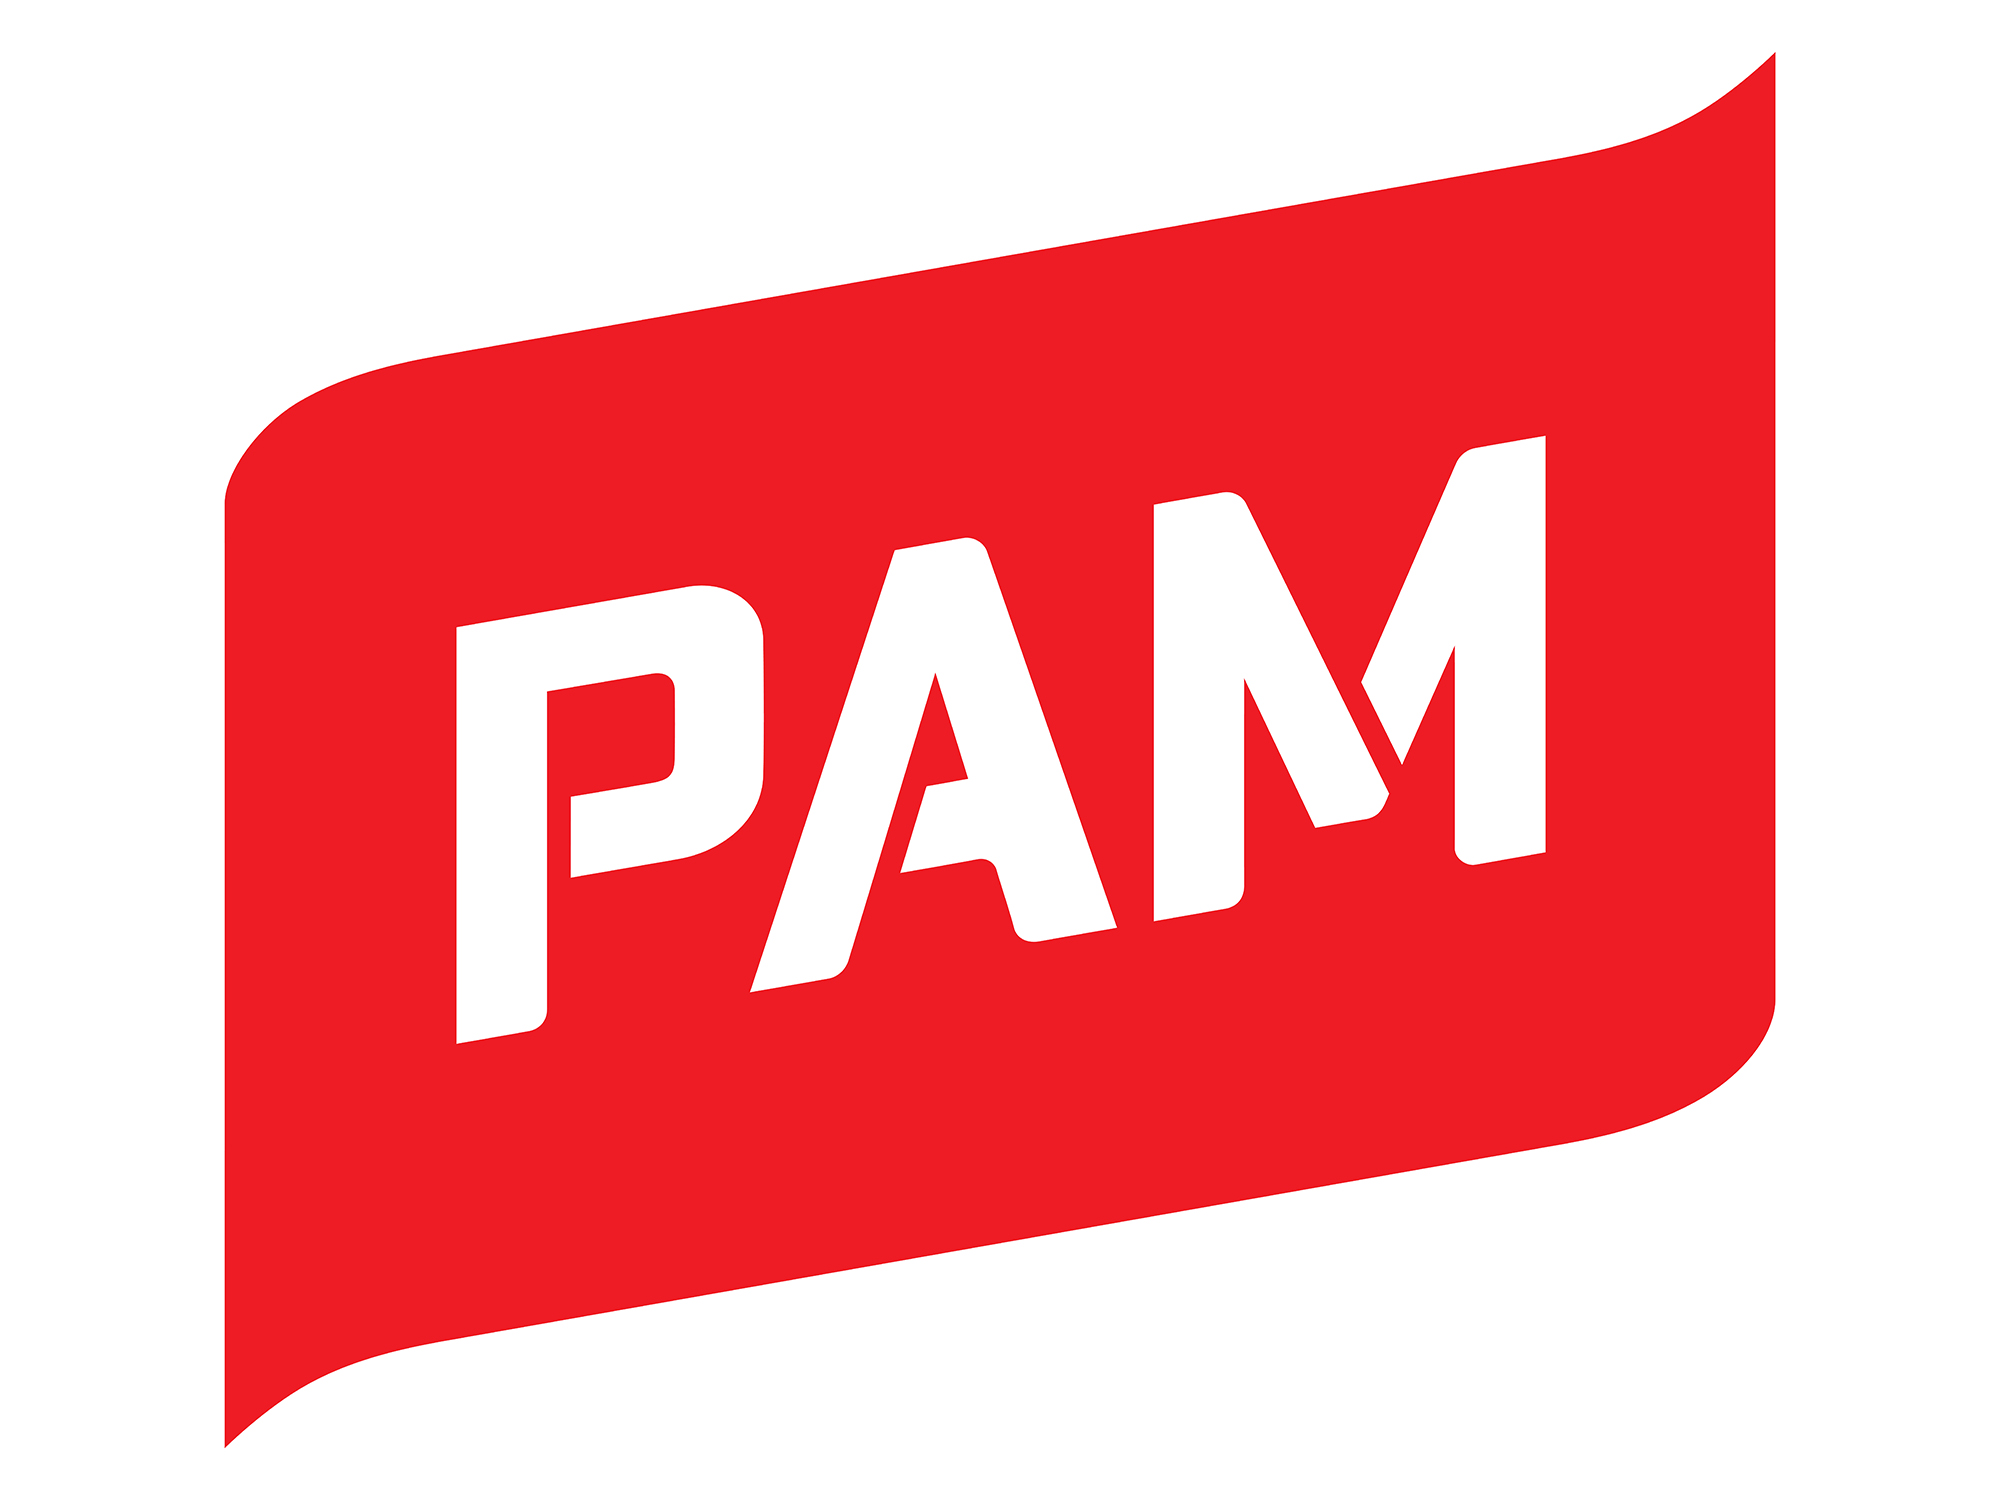 PAMin logo